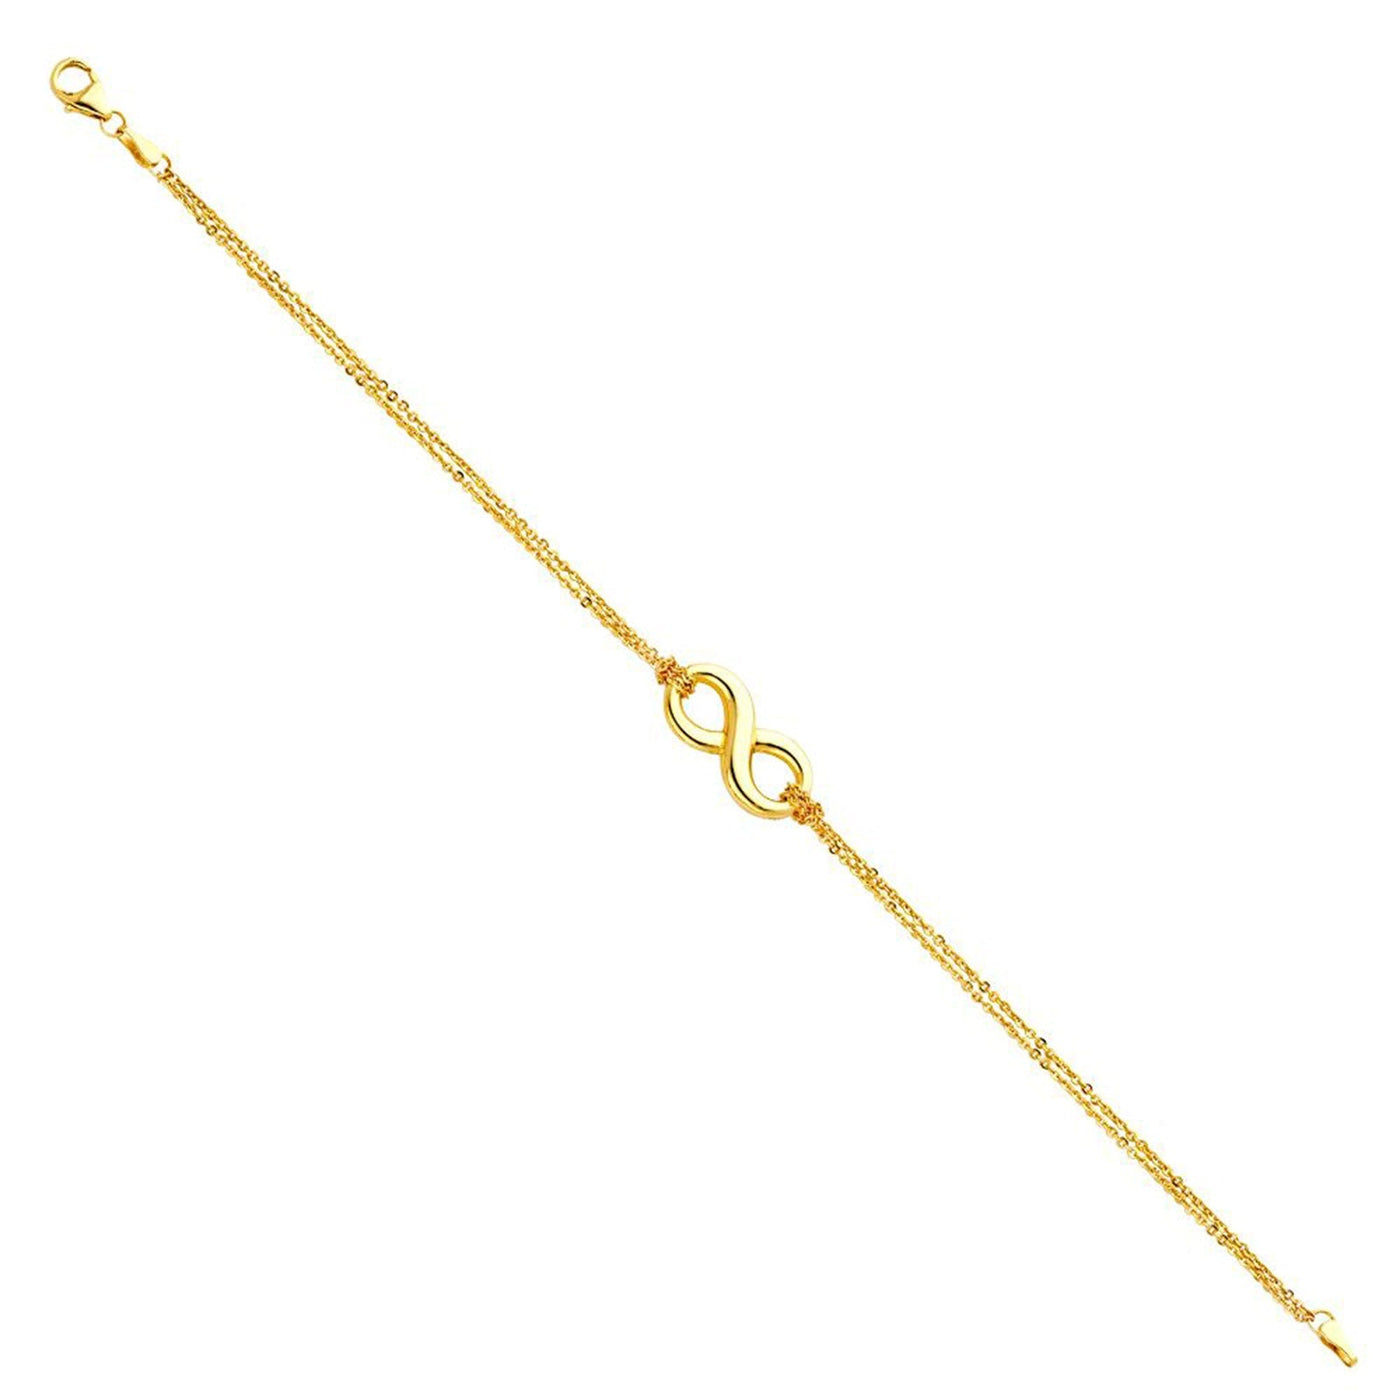 Fashion Infinity Bracelet - De Oro Jewelry